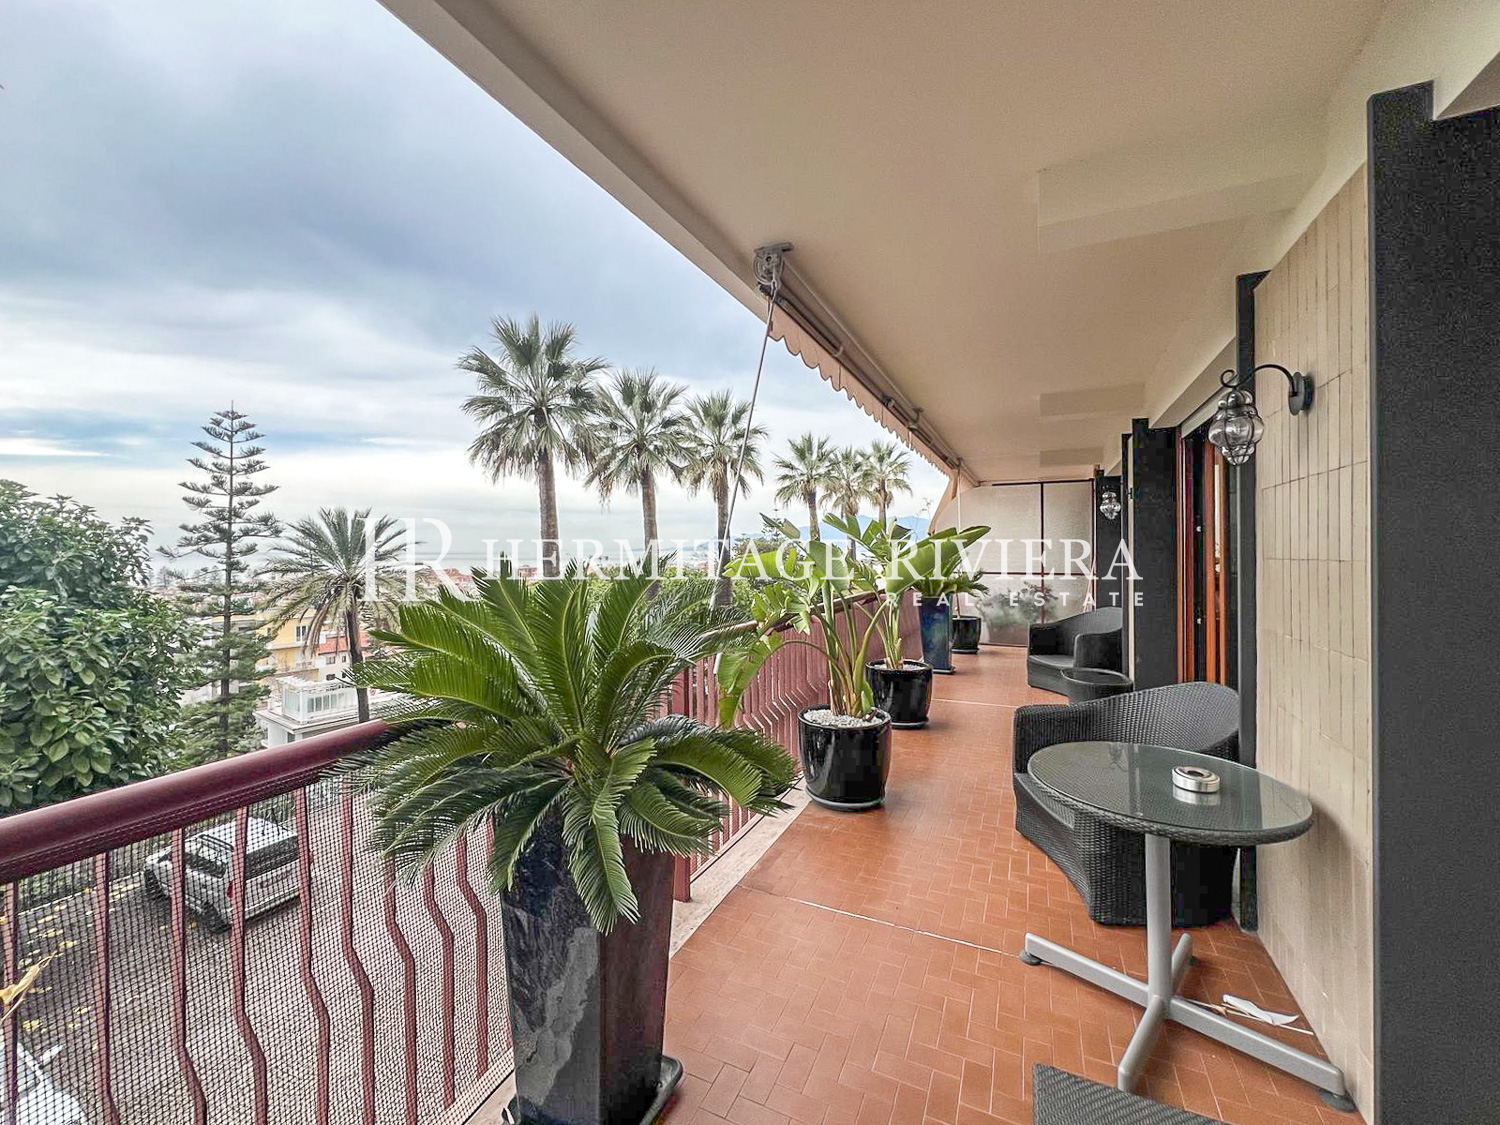 Appartement de luxe rénové avec terrasse et vue mer (image 1)